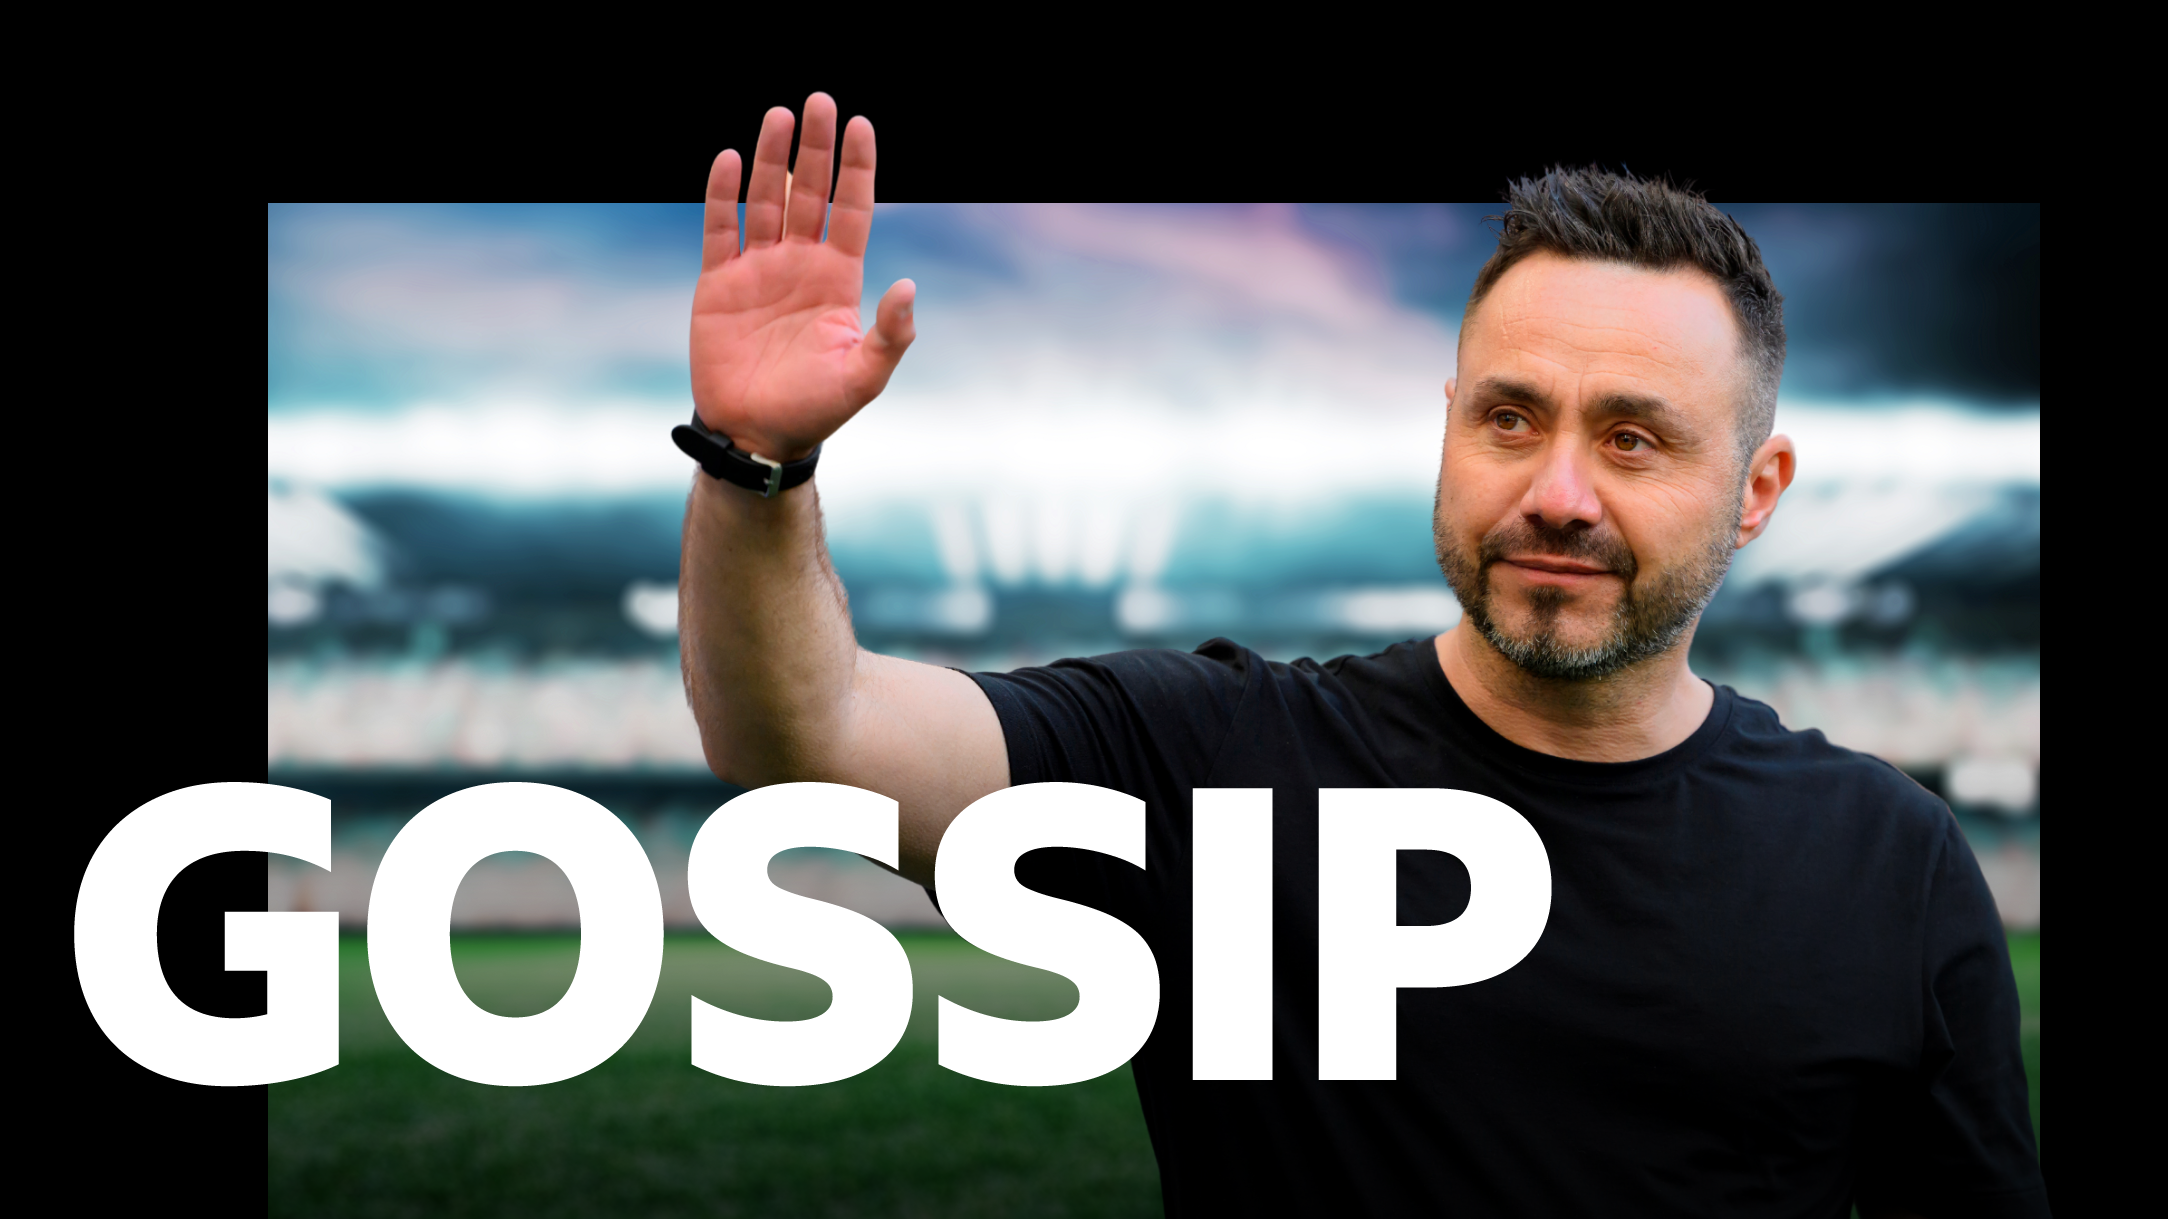 Man Utd approach De Zerbi - Tuesday's gossip